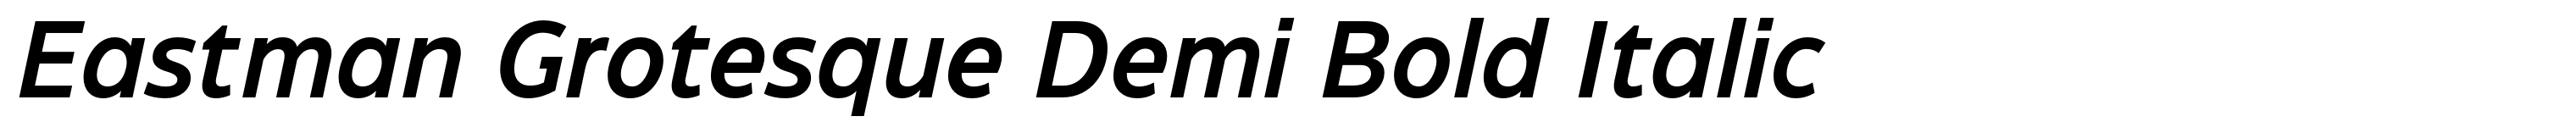 Eastman Grotesque Demi Bold Italic